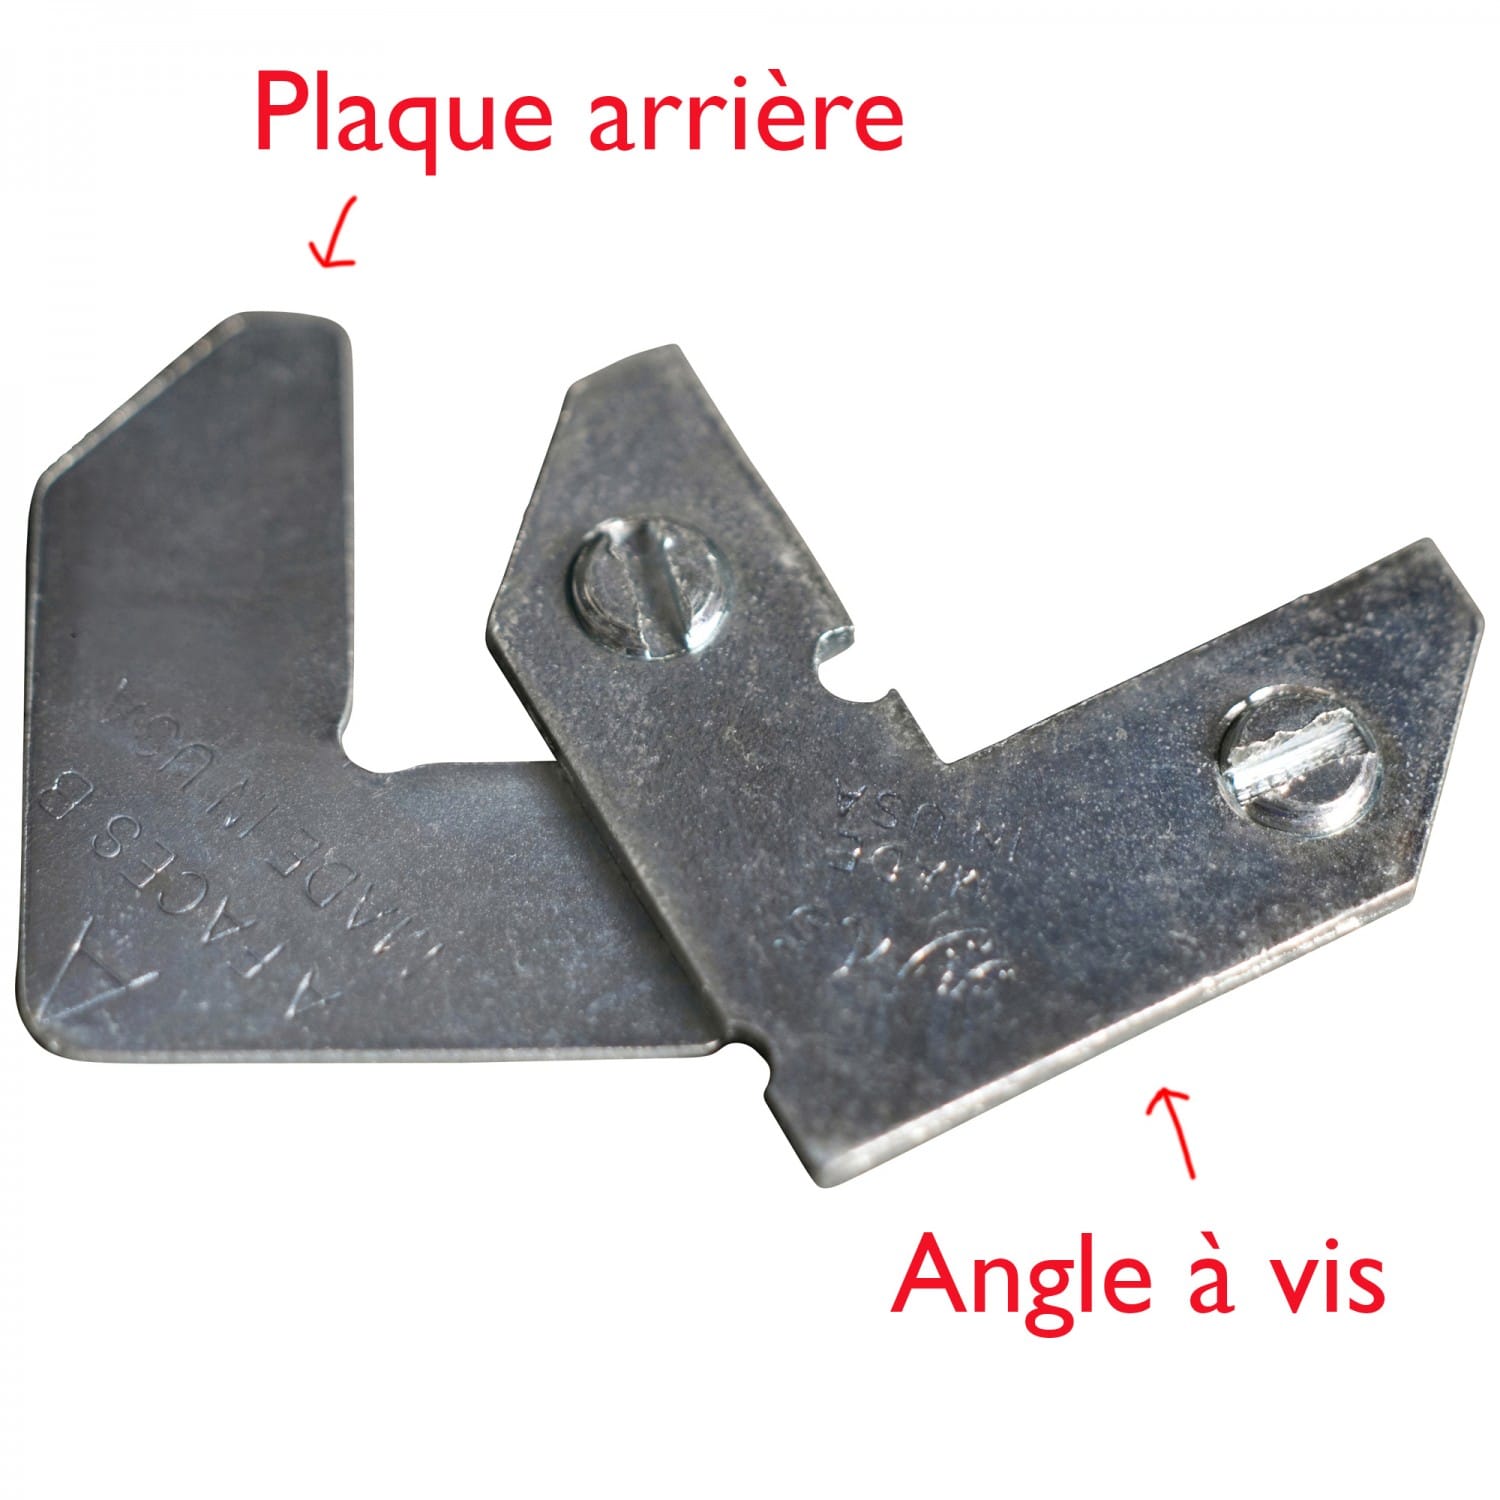 Plaque arrière pour angle à vis pour montage baguettes d'espacement en alu  (prévoir 4 pièces)